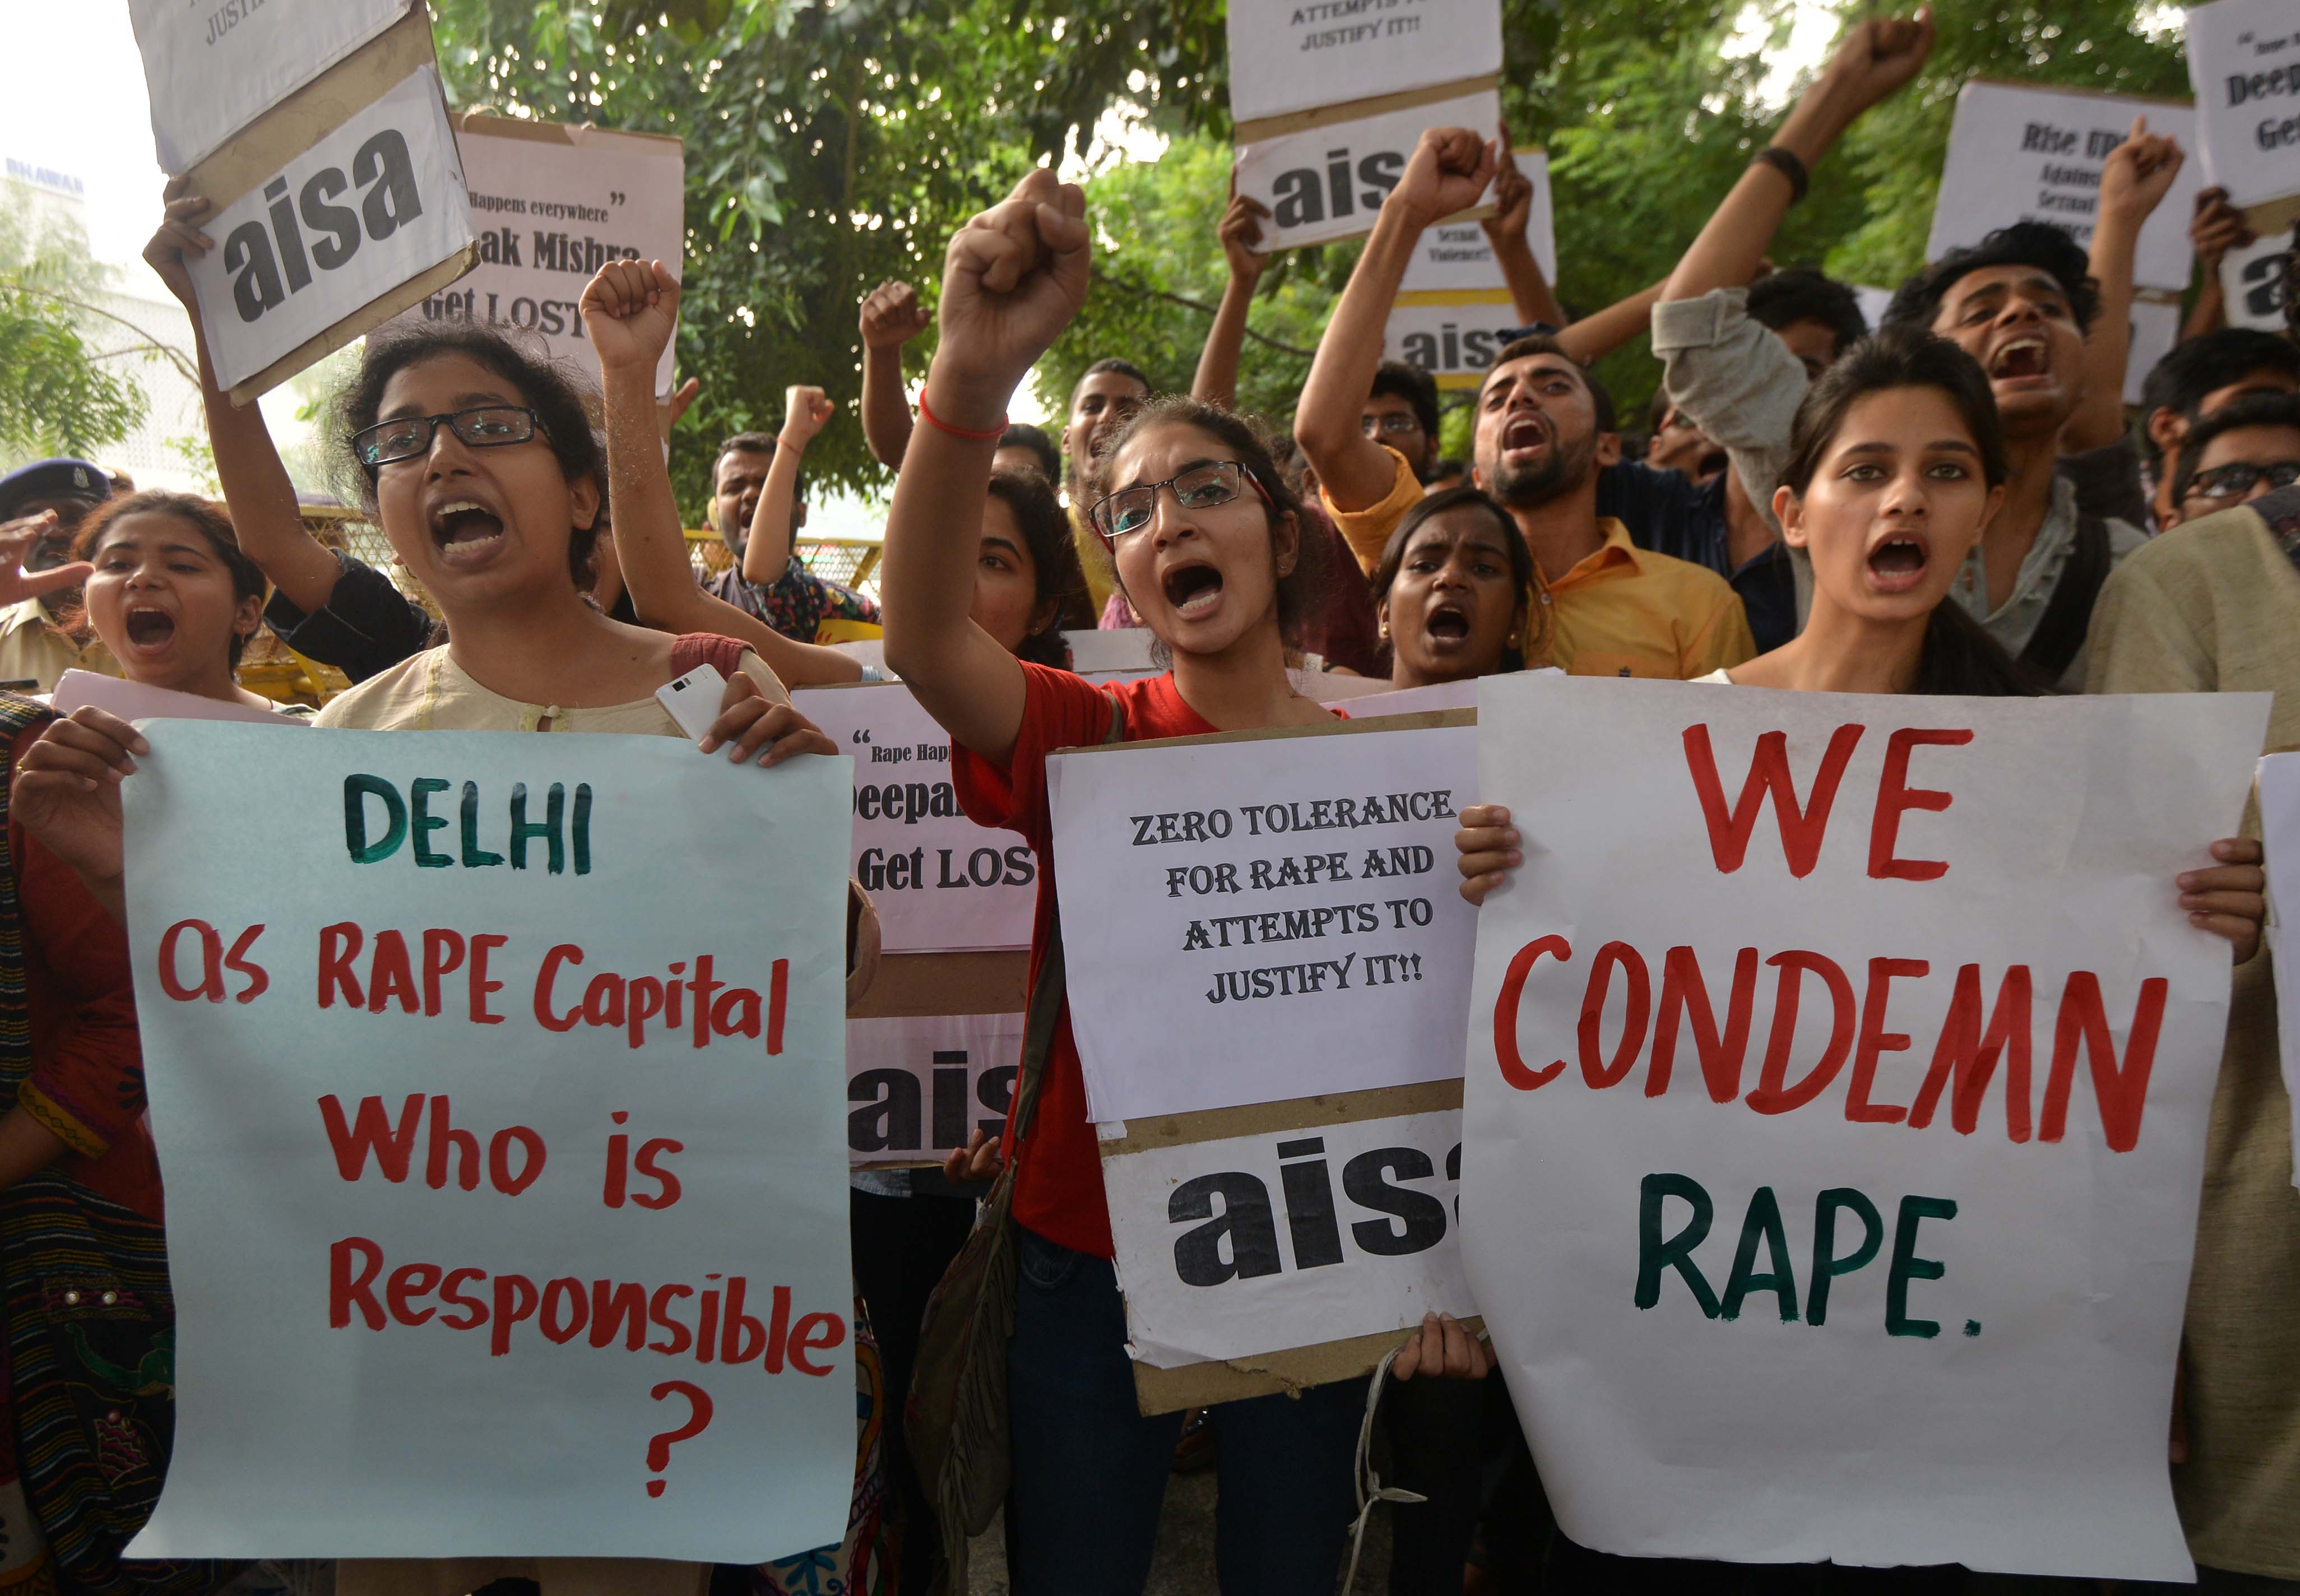 Megszületett a megerőszakolt 10 éves indiai lány gyereke